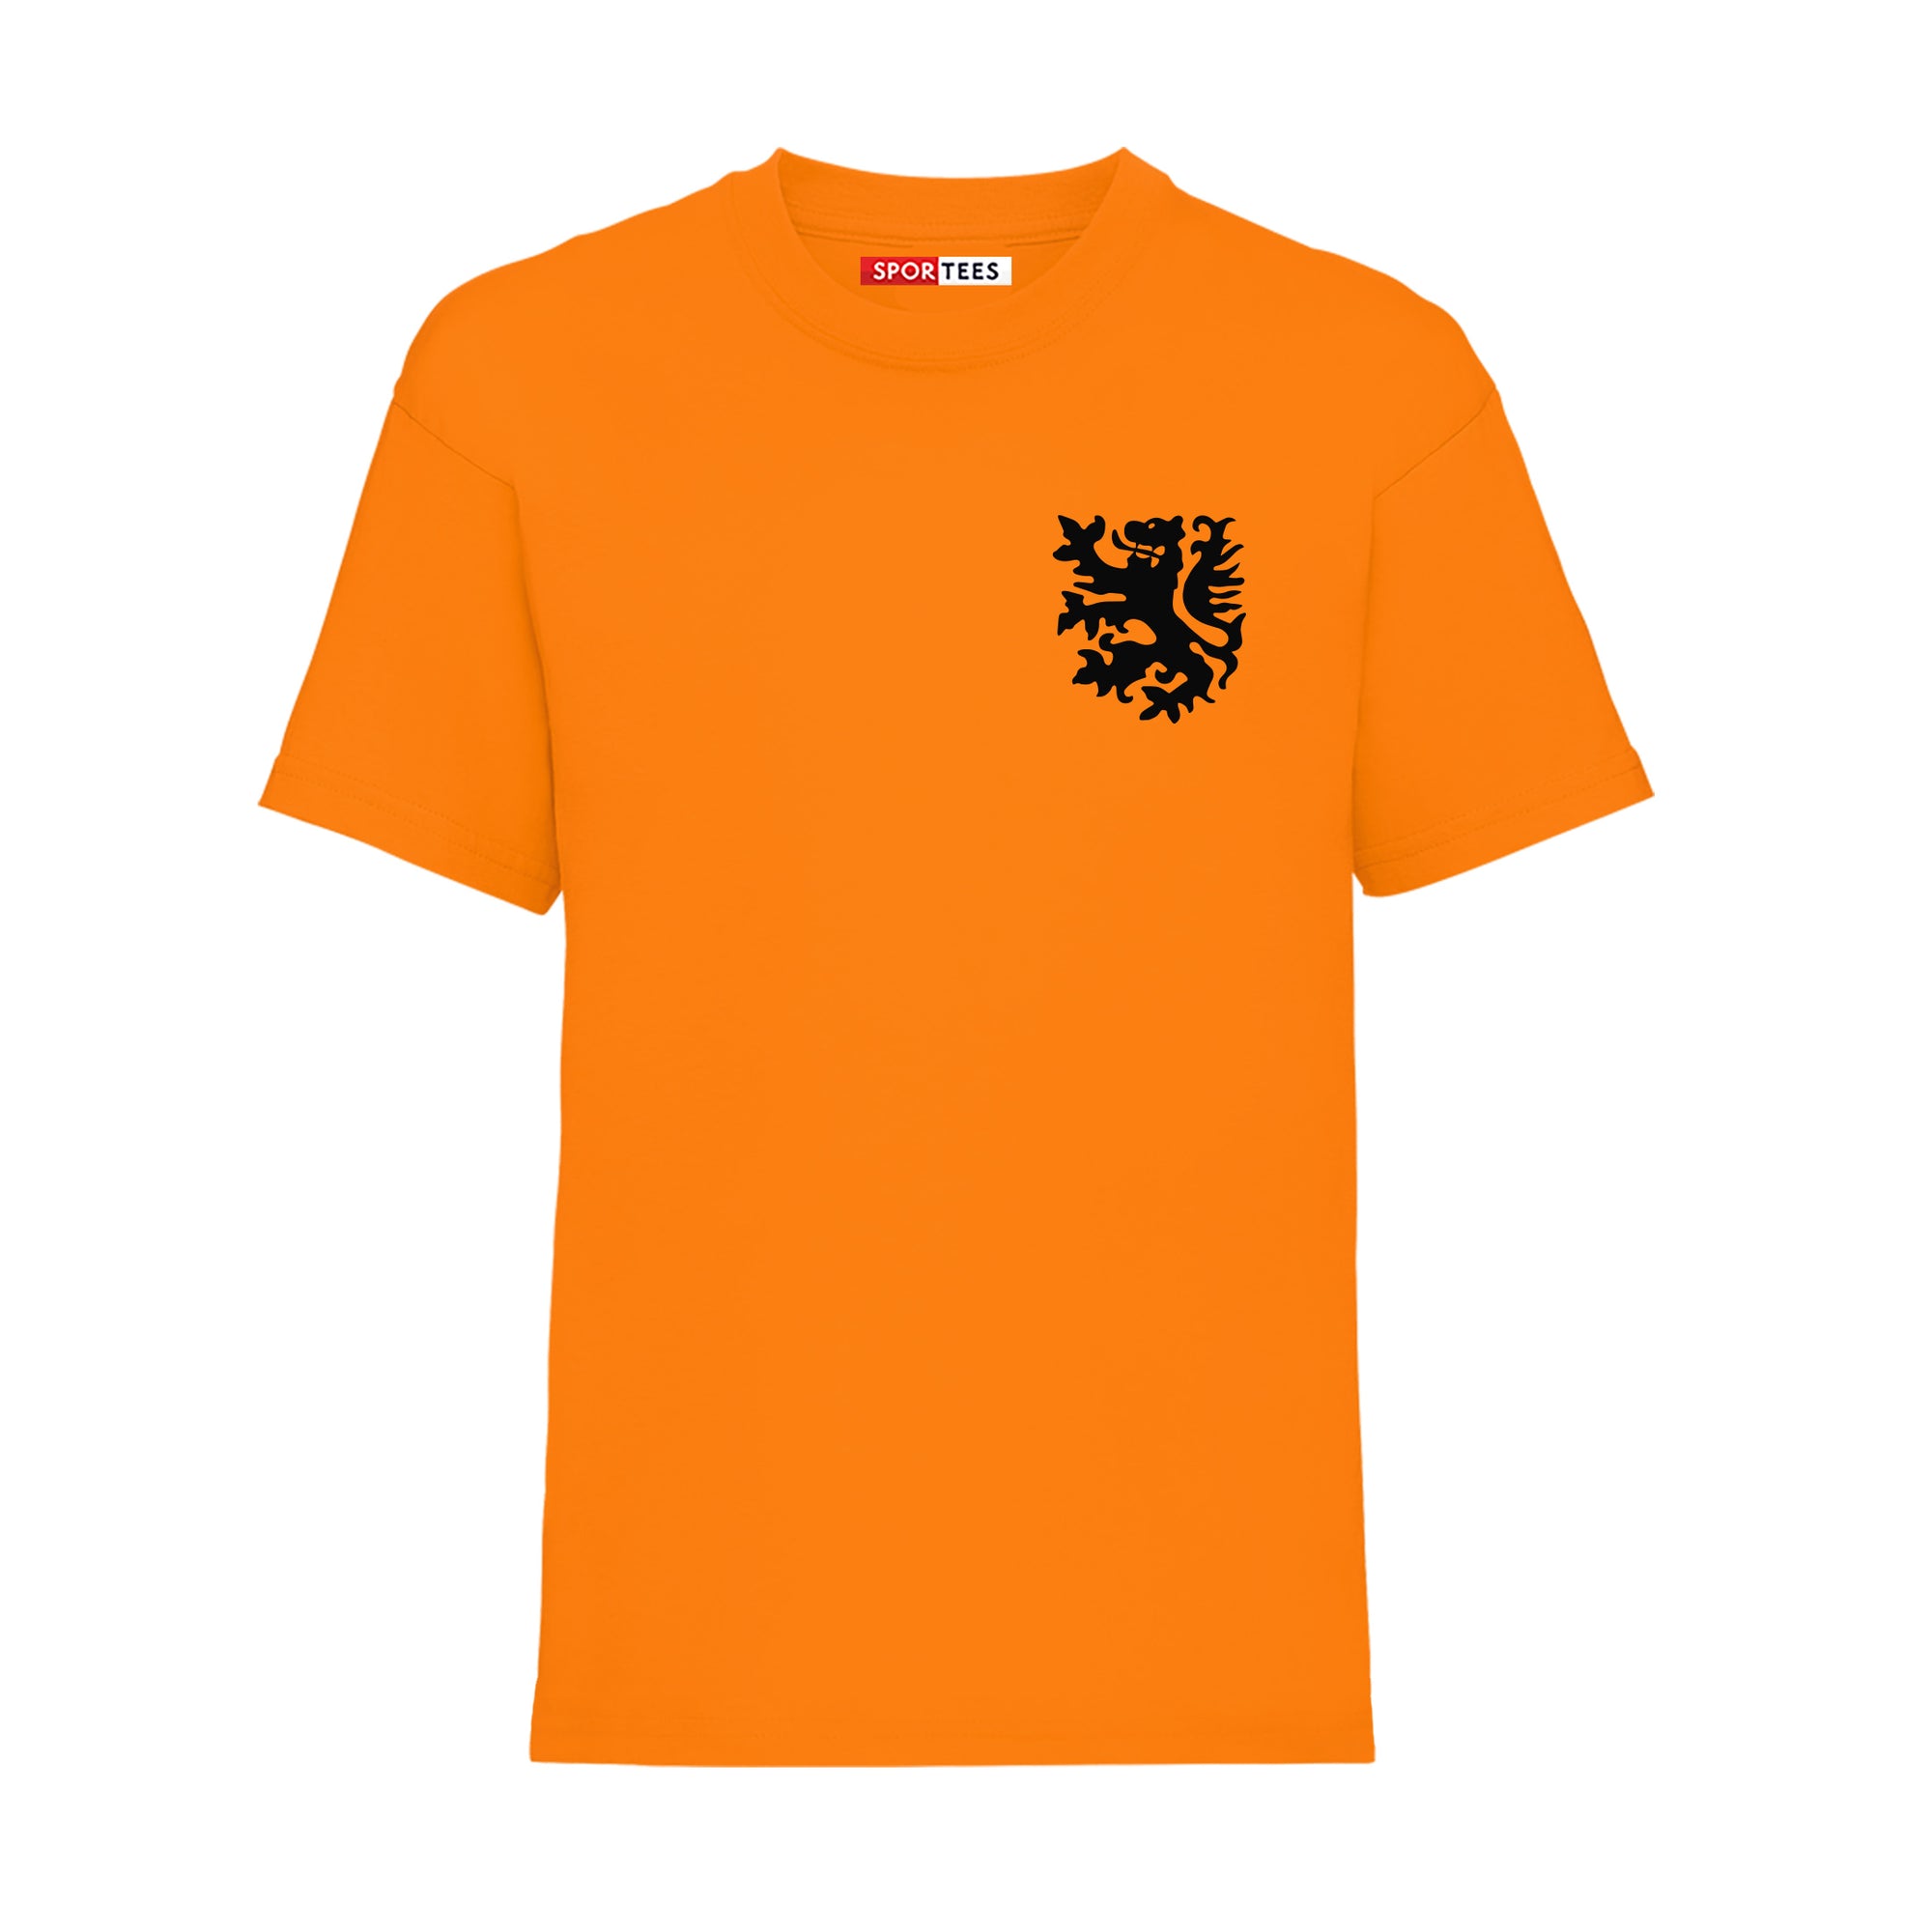 Personalised Holland Style Orange Home Shirt